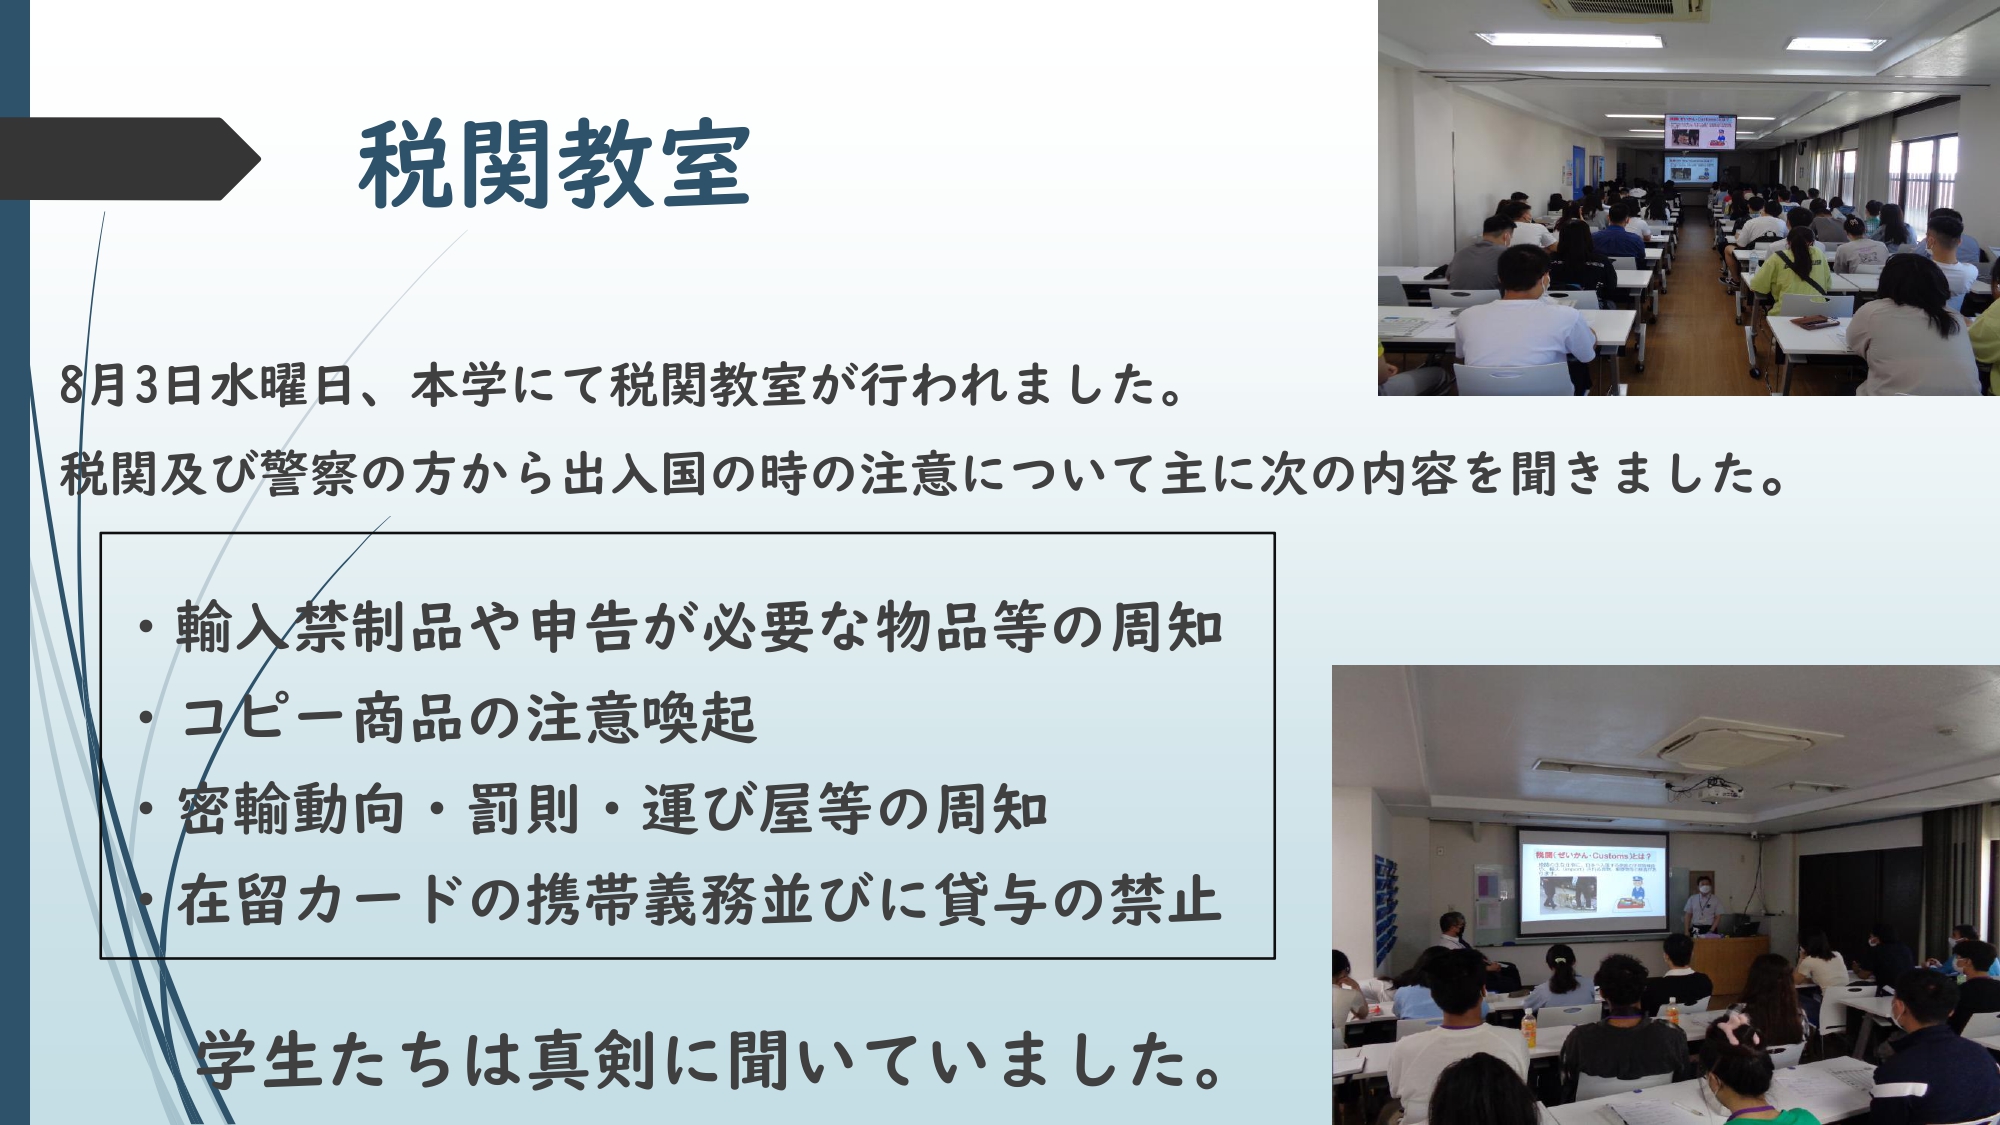 ８月３日に大阪税関と警察の方をお招きして税関教室をしていただきました。